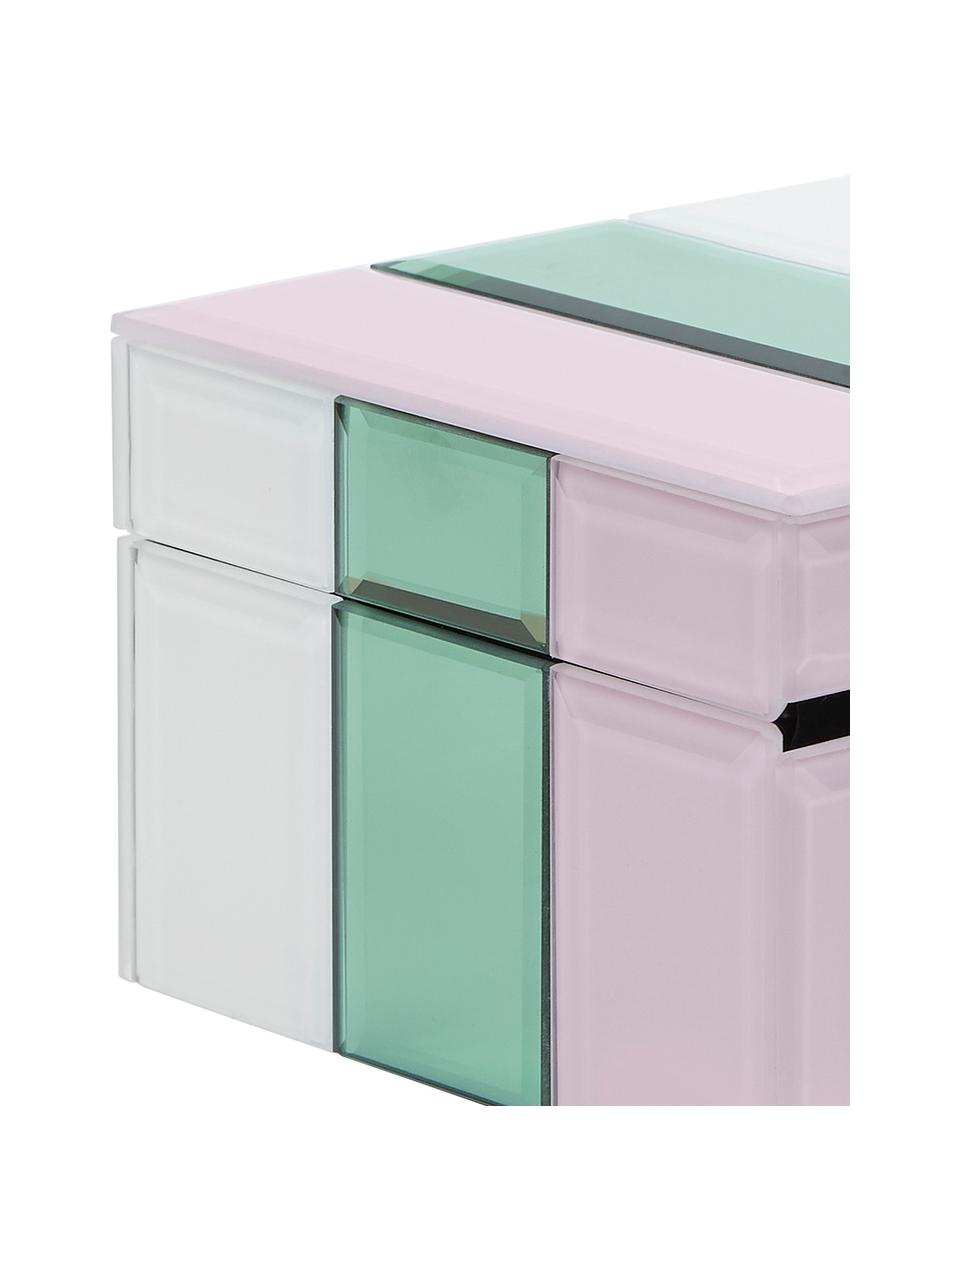 Schmuckbox Pastel aus Glas, Box: Mitteldichte Holzfaserpla, Weiss, Mint, Rosa, B 13 x H 9 cm